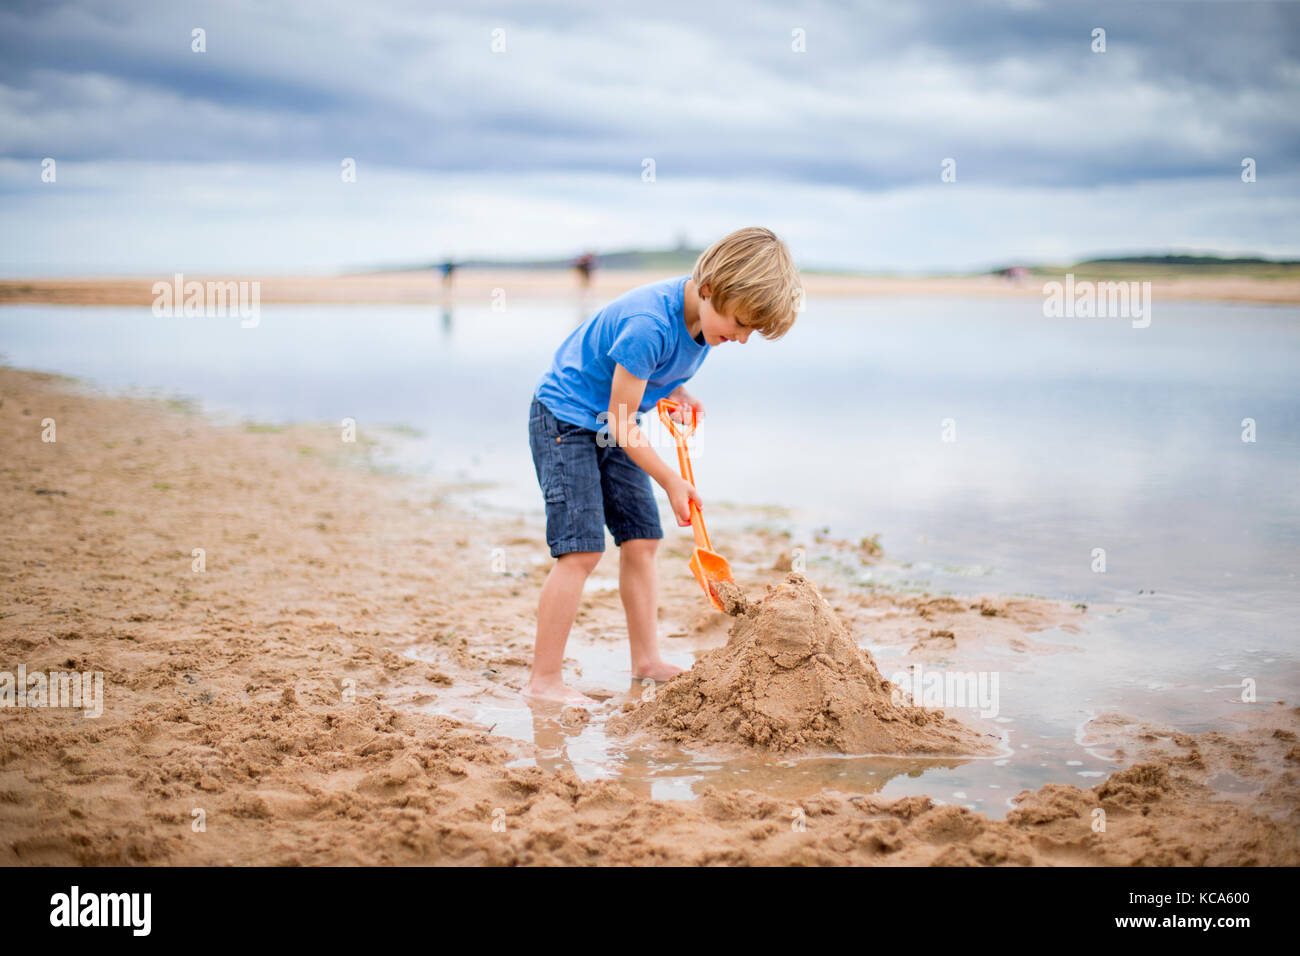 Мальчик на пляже строит замок